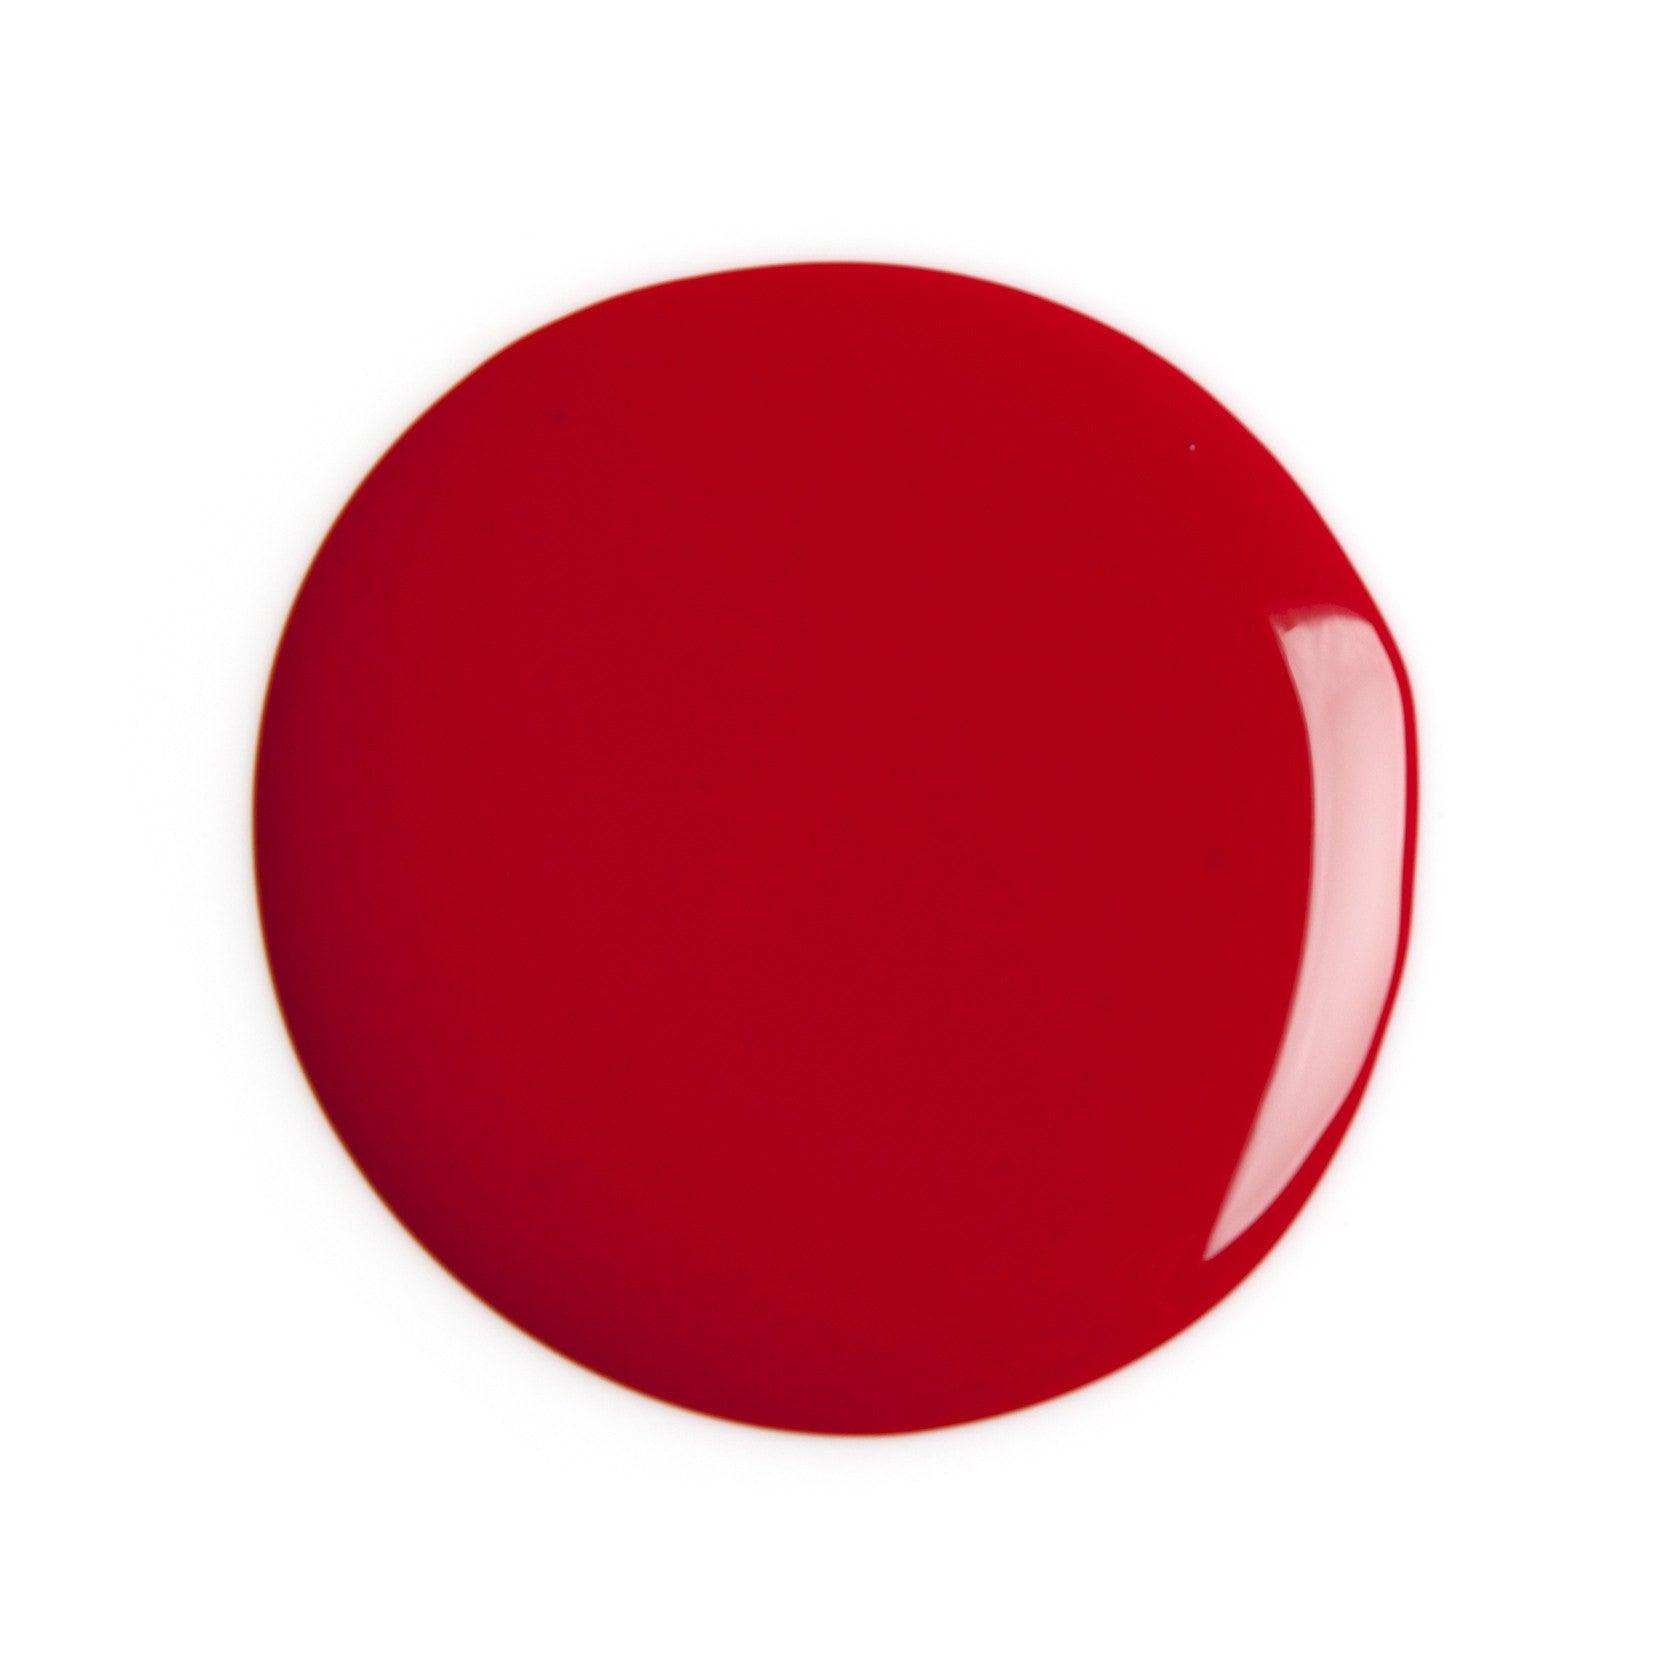 LENA - Breathable Nail Polish - Seeing Red - LE43 - LENA NAIL POLISH DIRECT